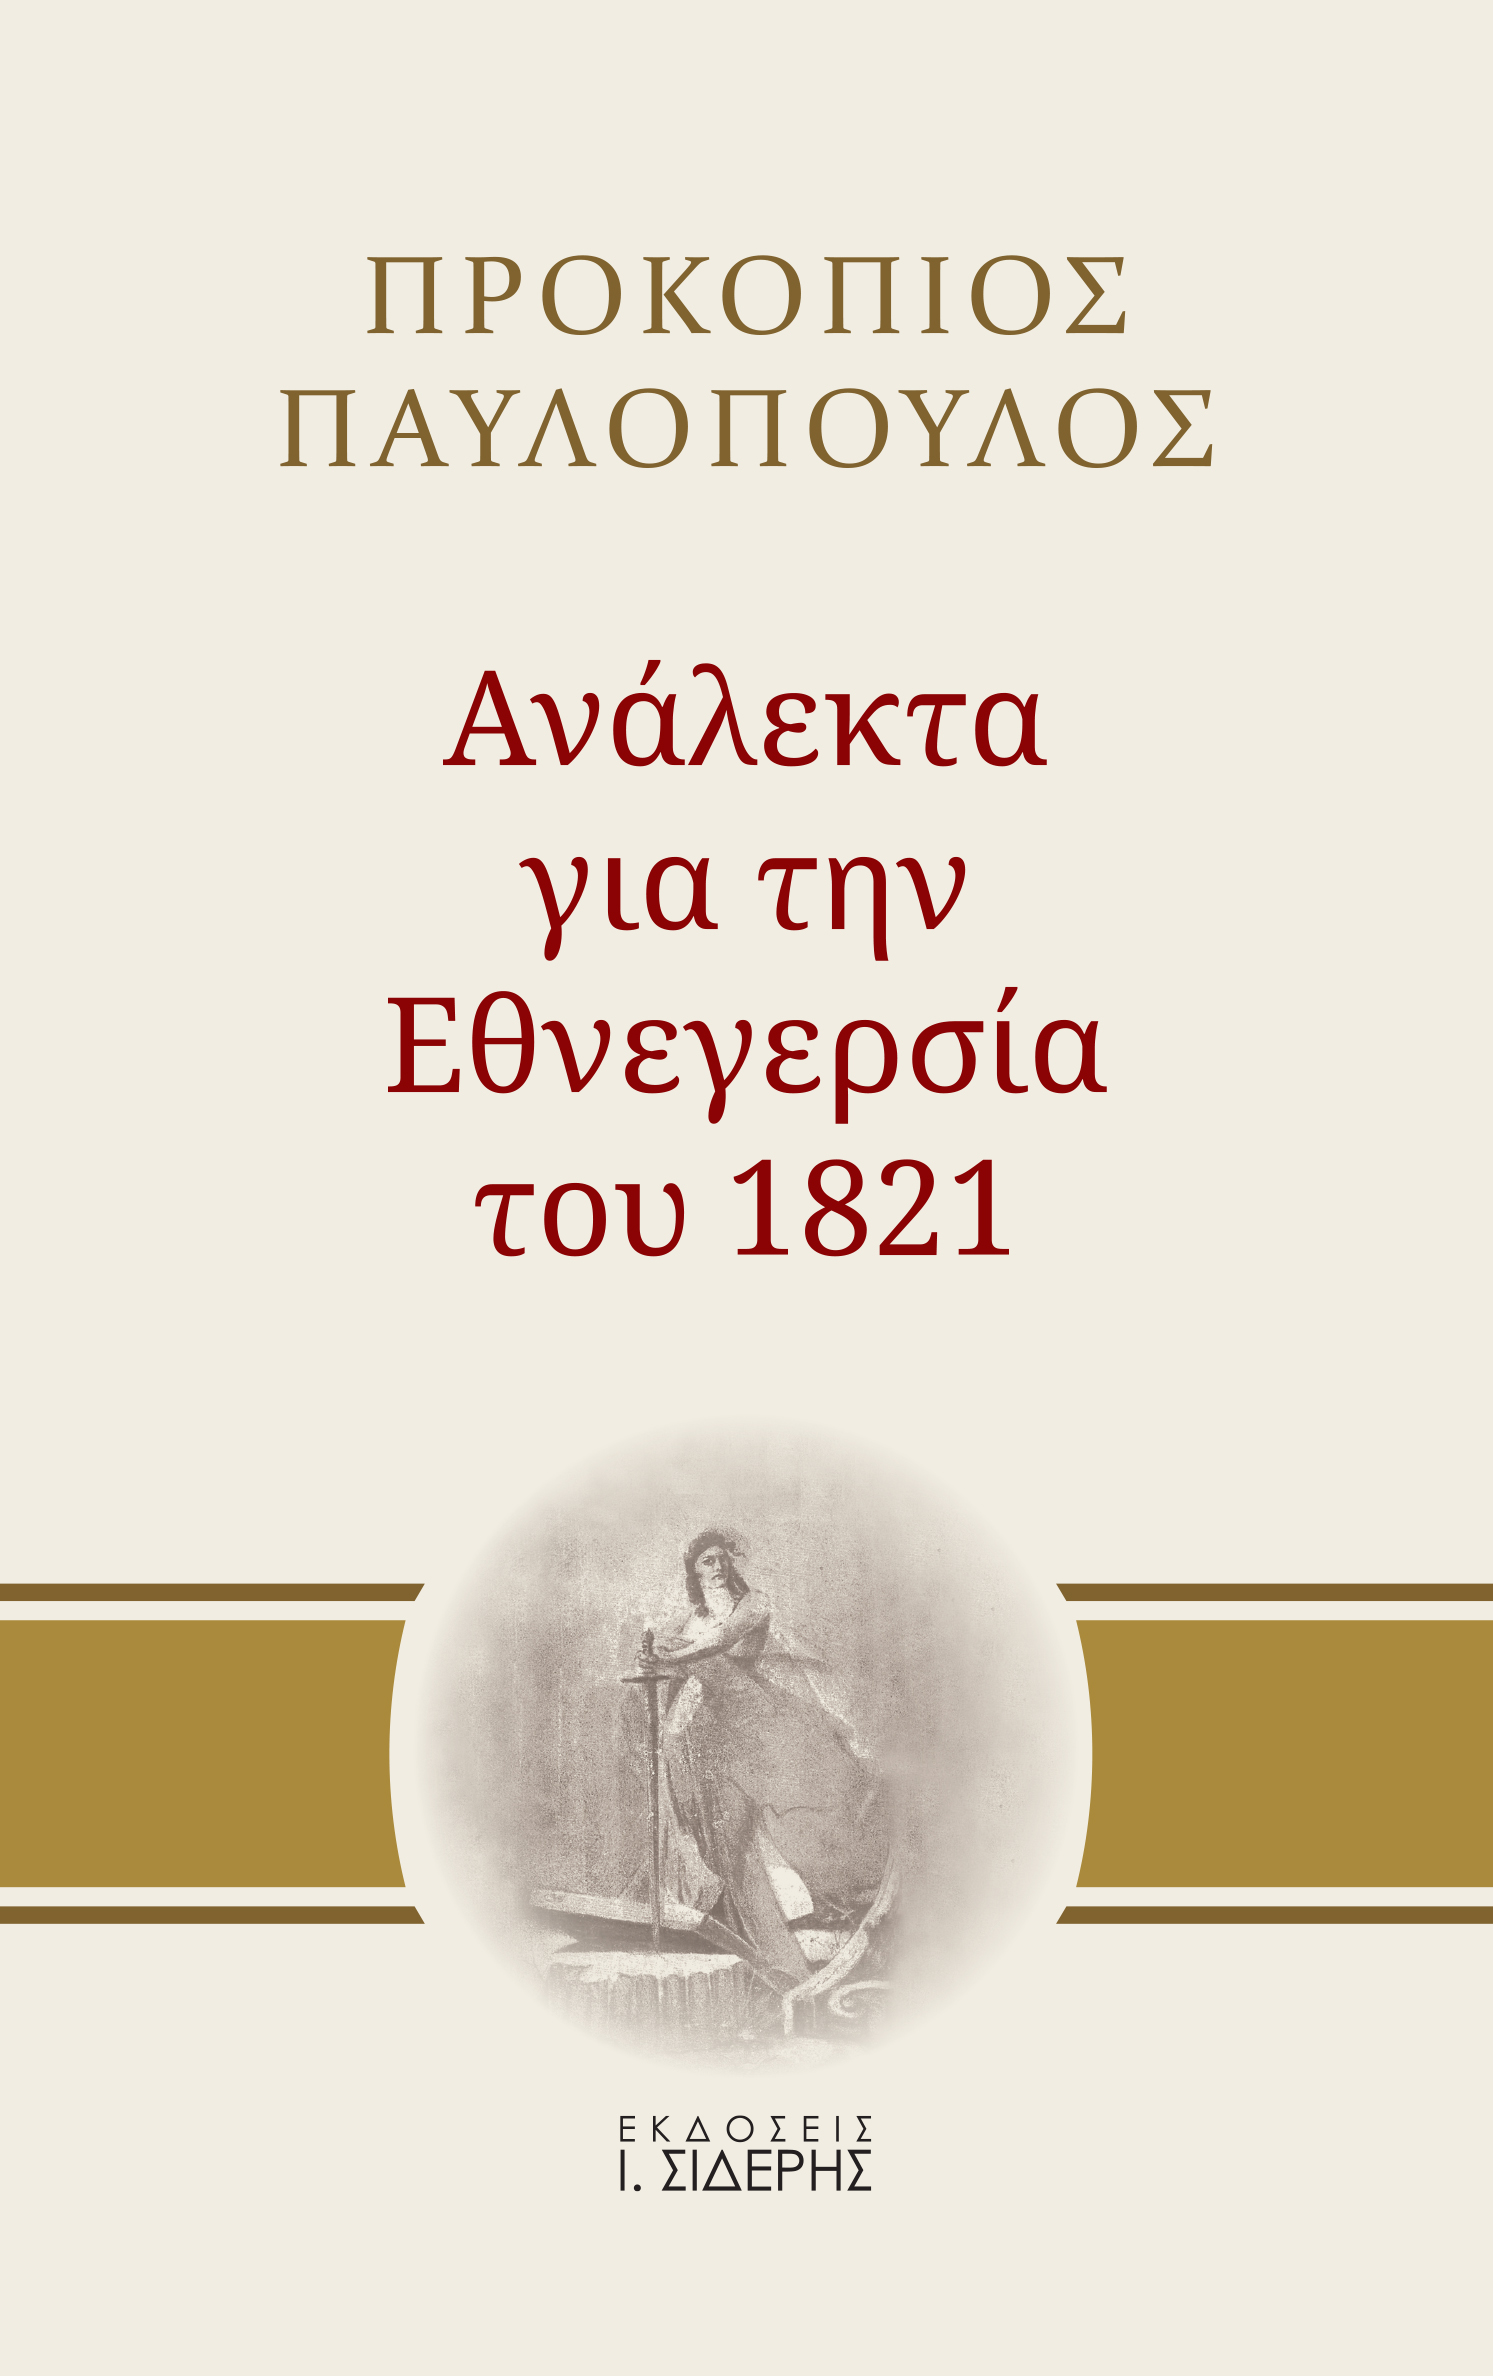 Ανάλεκτα για την εθνεγερσία του 1821, , Παυλόπουλος, Προκόπης Β., 1950-, Εκδόσεις Ι. Σιδέρης, 2021